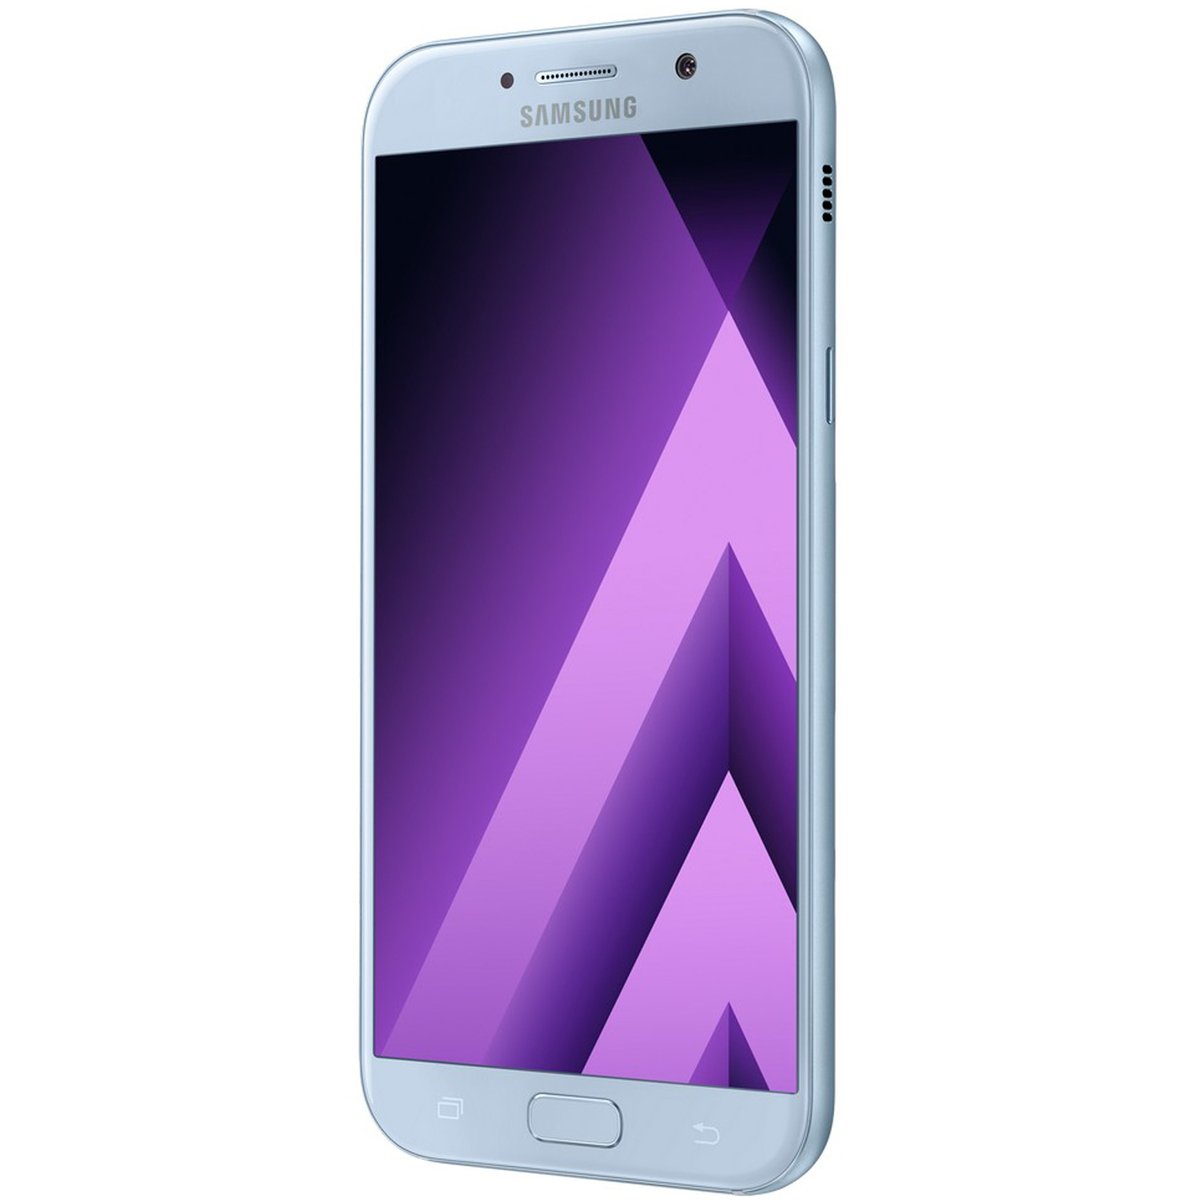 Samsung Galaxy A7 (2017) A720F 32GB LTE Blue